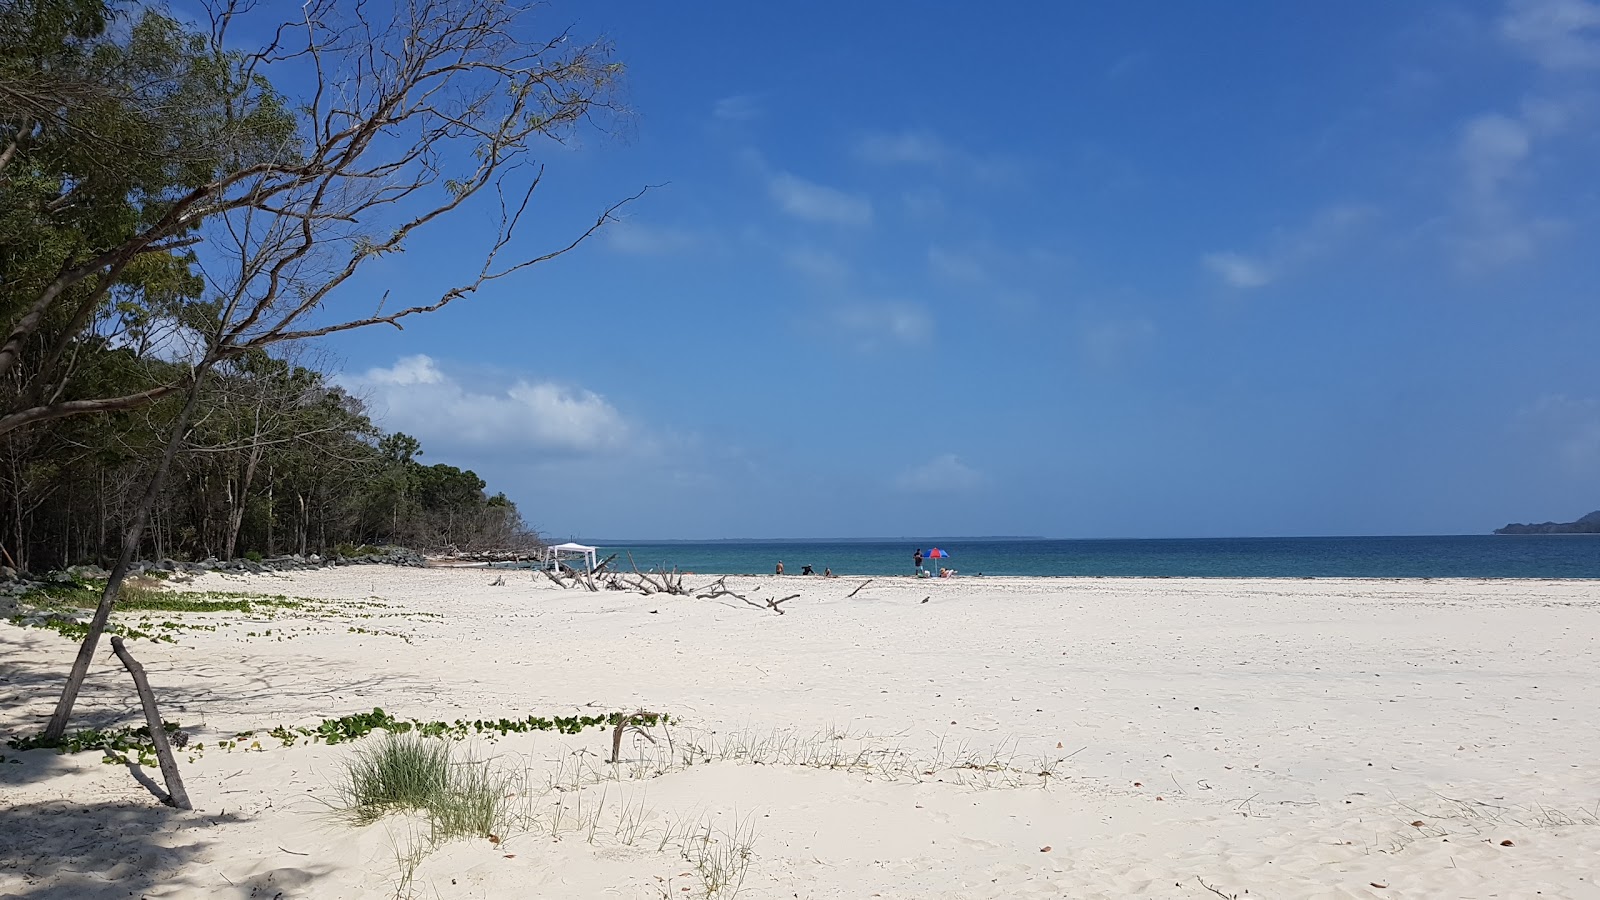 Fotografija Inskip Point Beach nahaja se v naravnem okolju